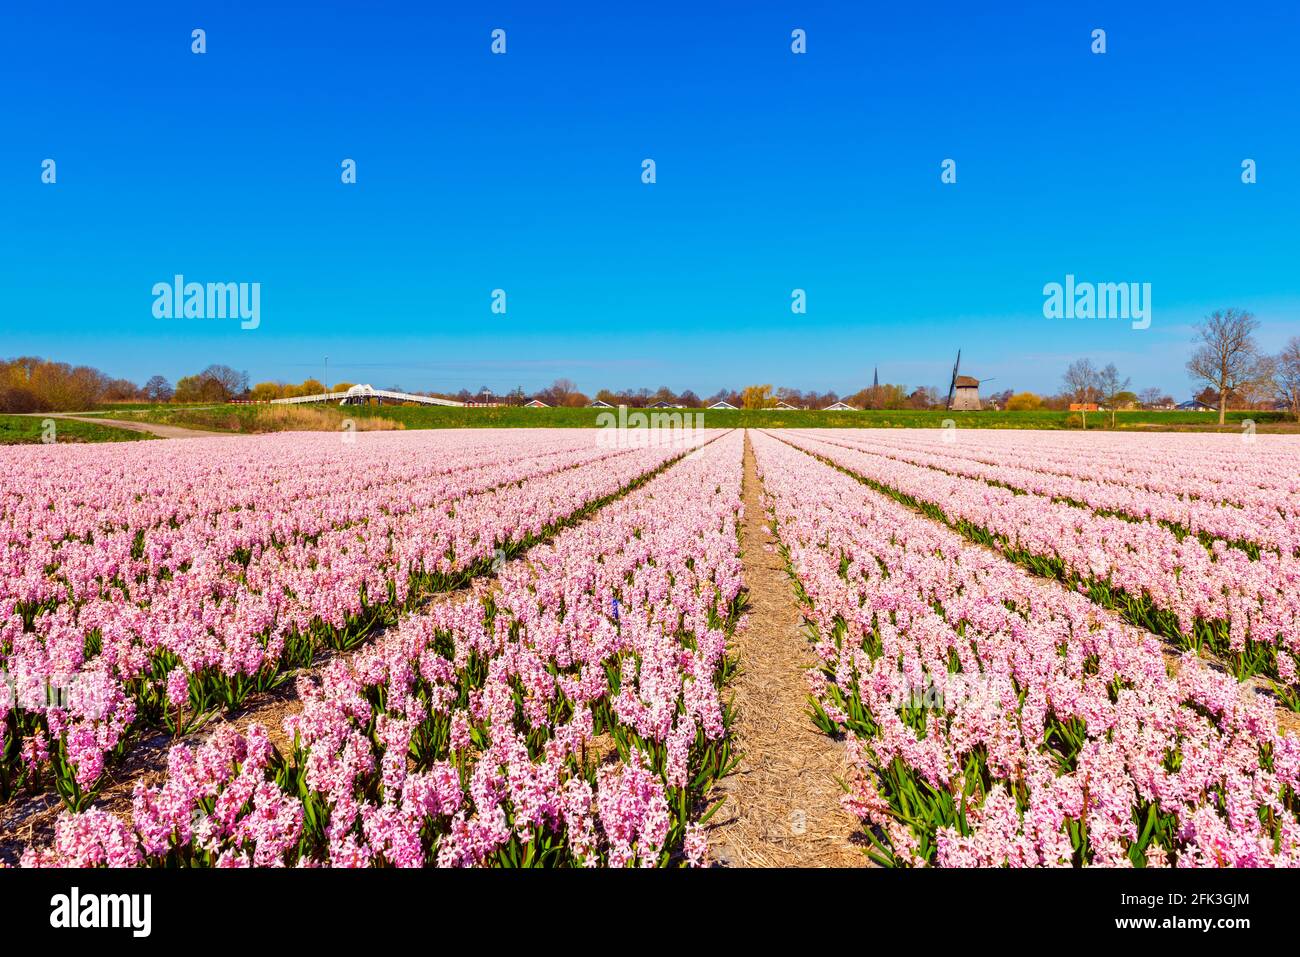 Pink Flower field in Alkmaar Netherlands in Spring Stock Photo